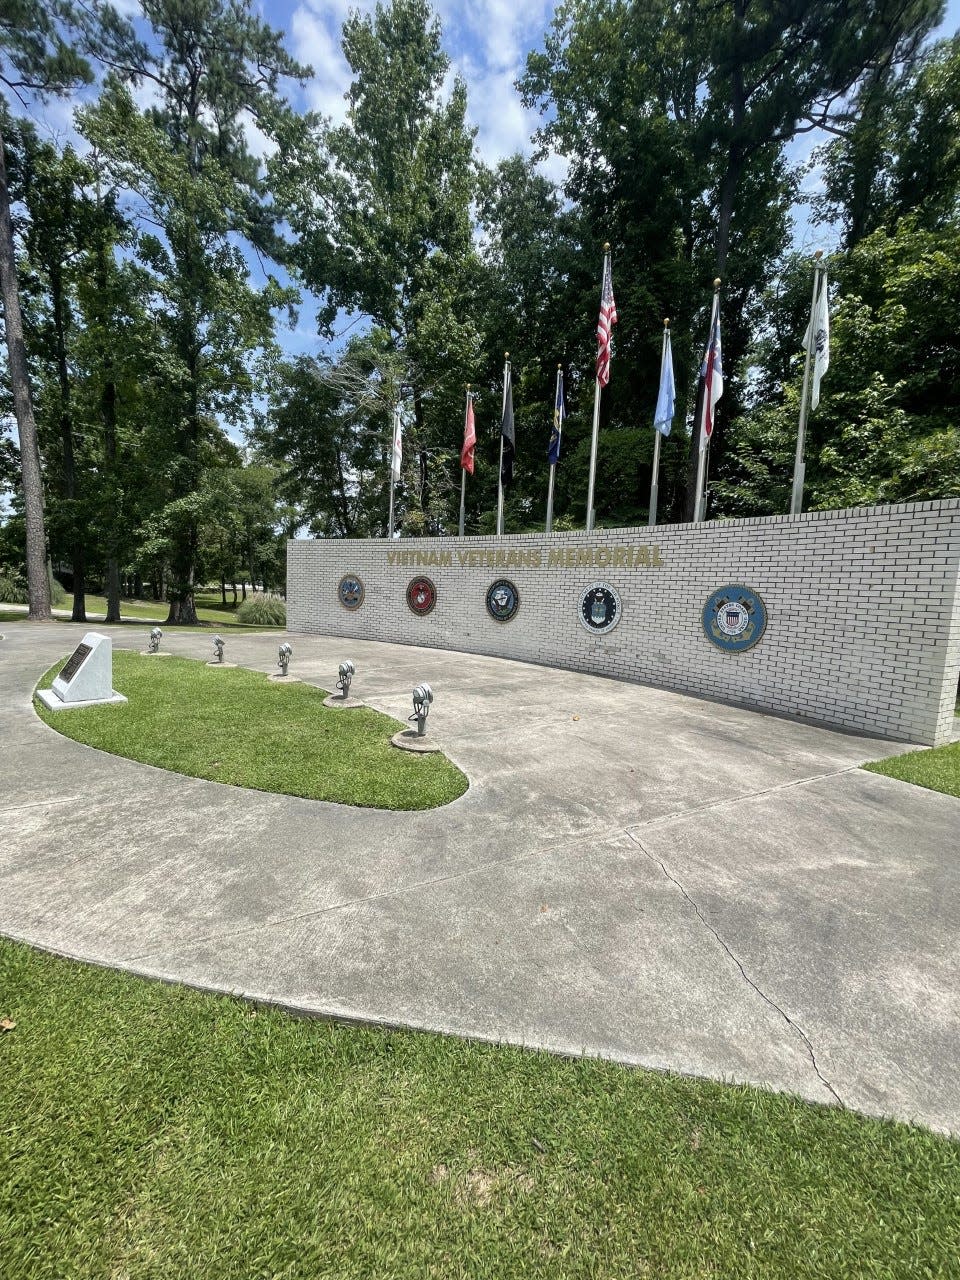 The Vietnam Veterans Memorial is located at the Lejeune Memorial Gardens.